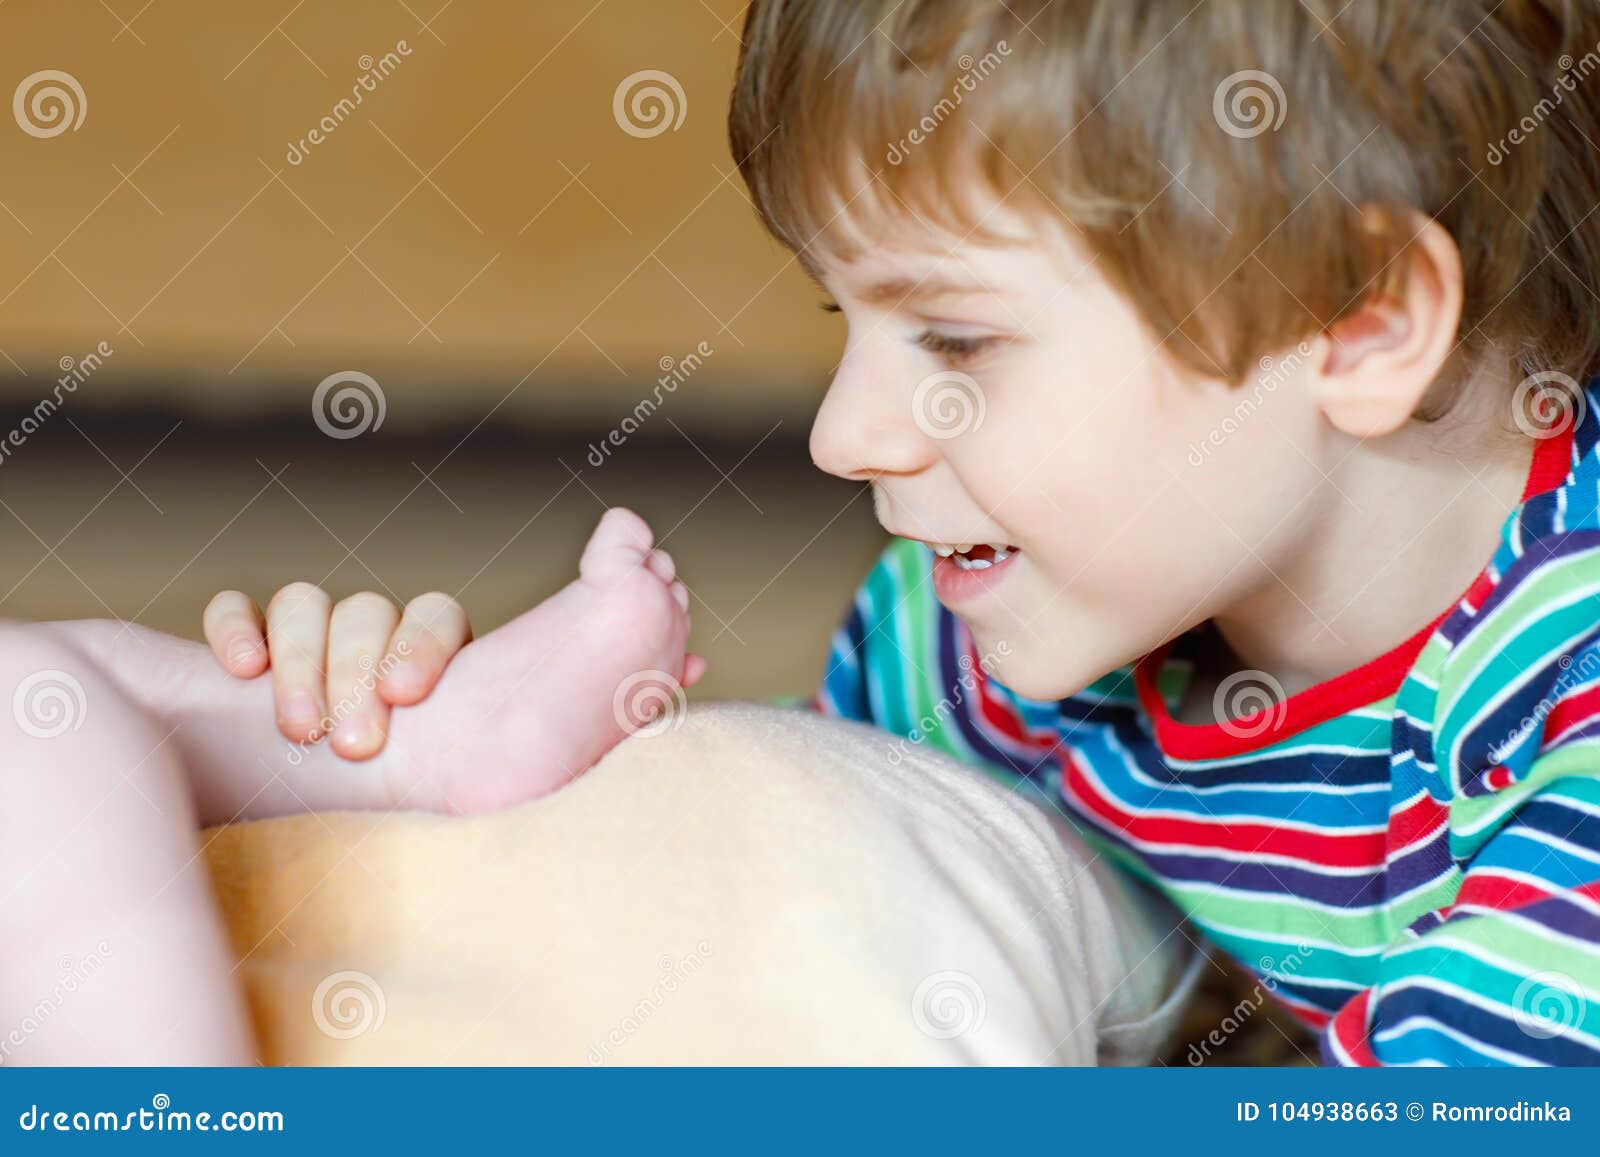 Яички мальчика рассказы. Яйца маленького мальчика. Маленькие яички у мальчика. Мальчики с маленькими яичками. Мальчишки играются с ножками.